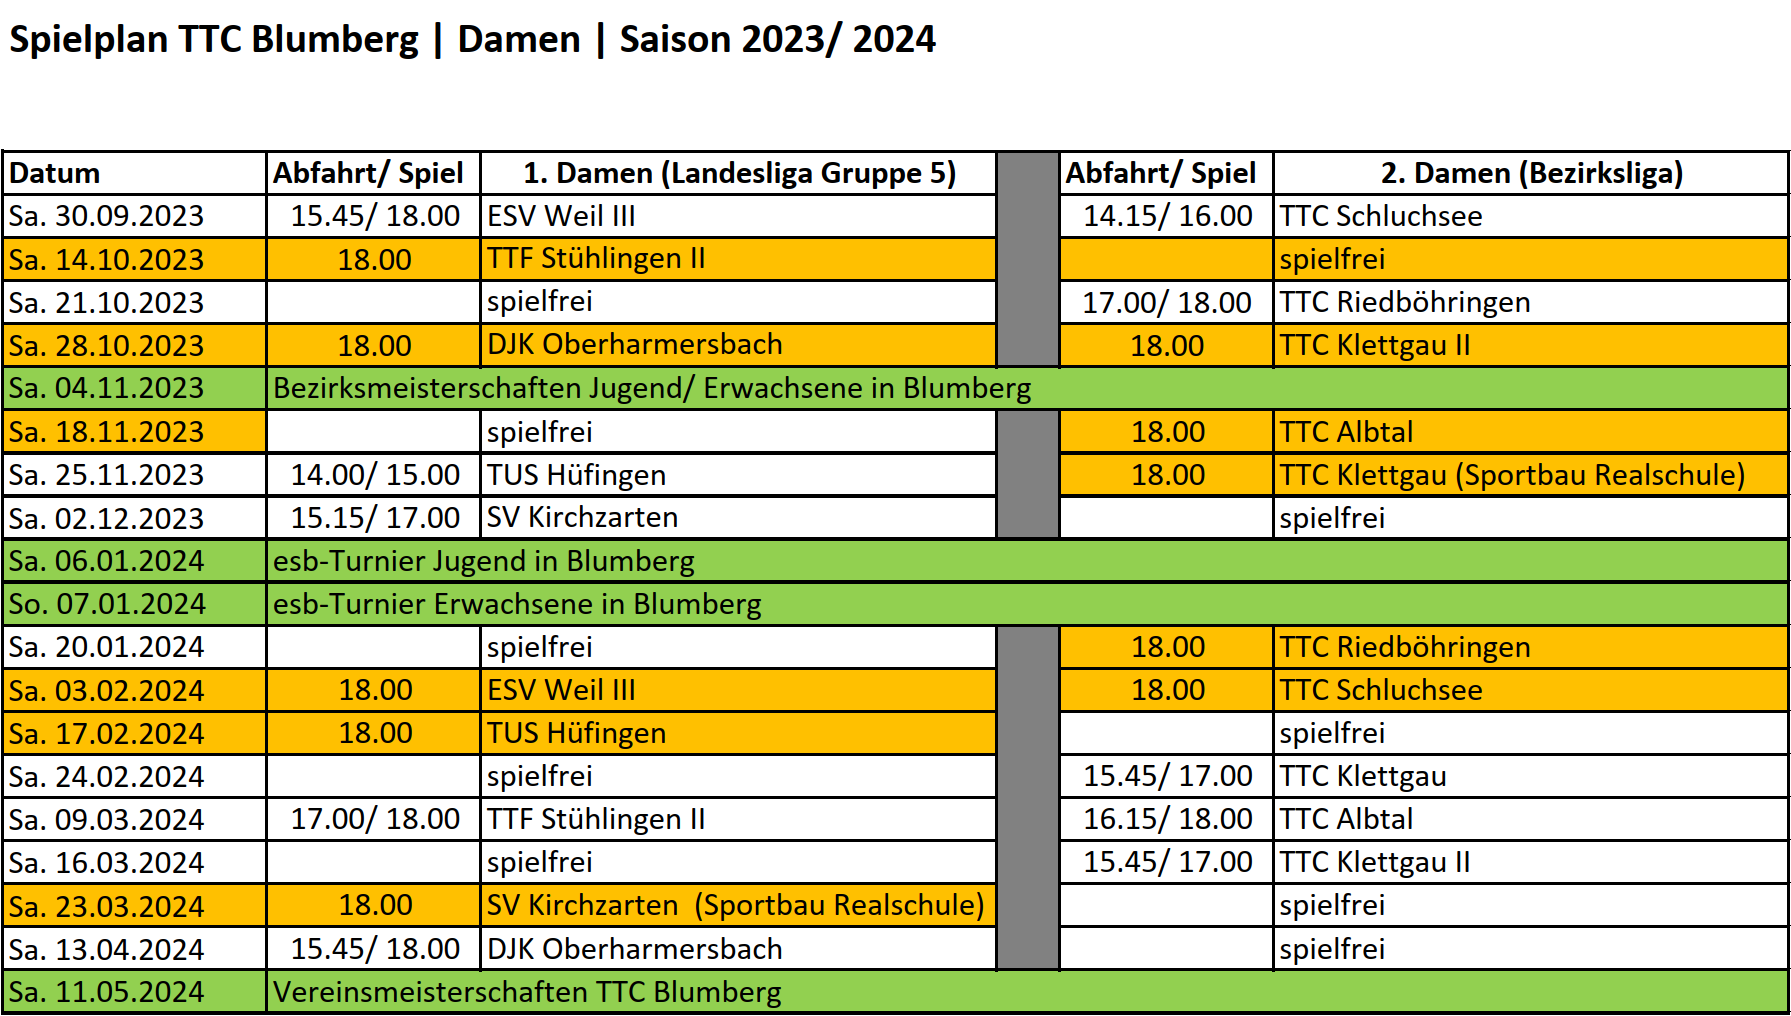 Spielplan TTC Blumberg Damen Saison 2023 2024